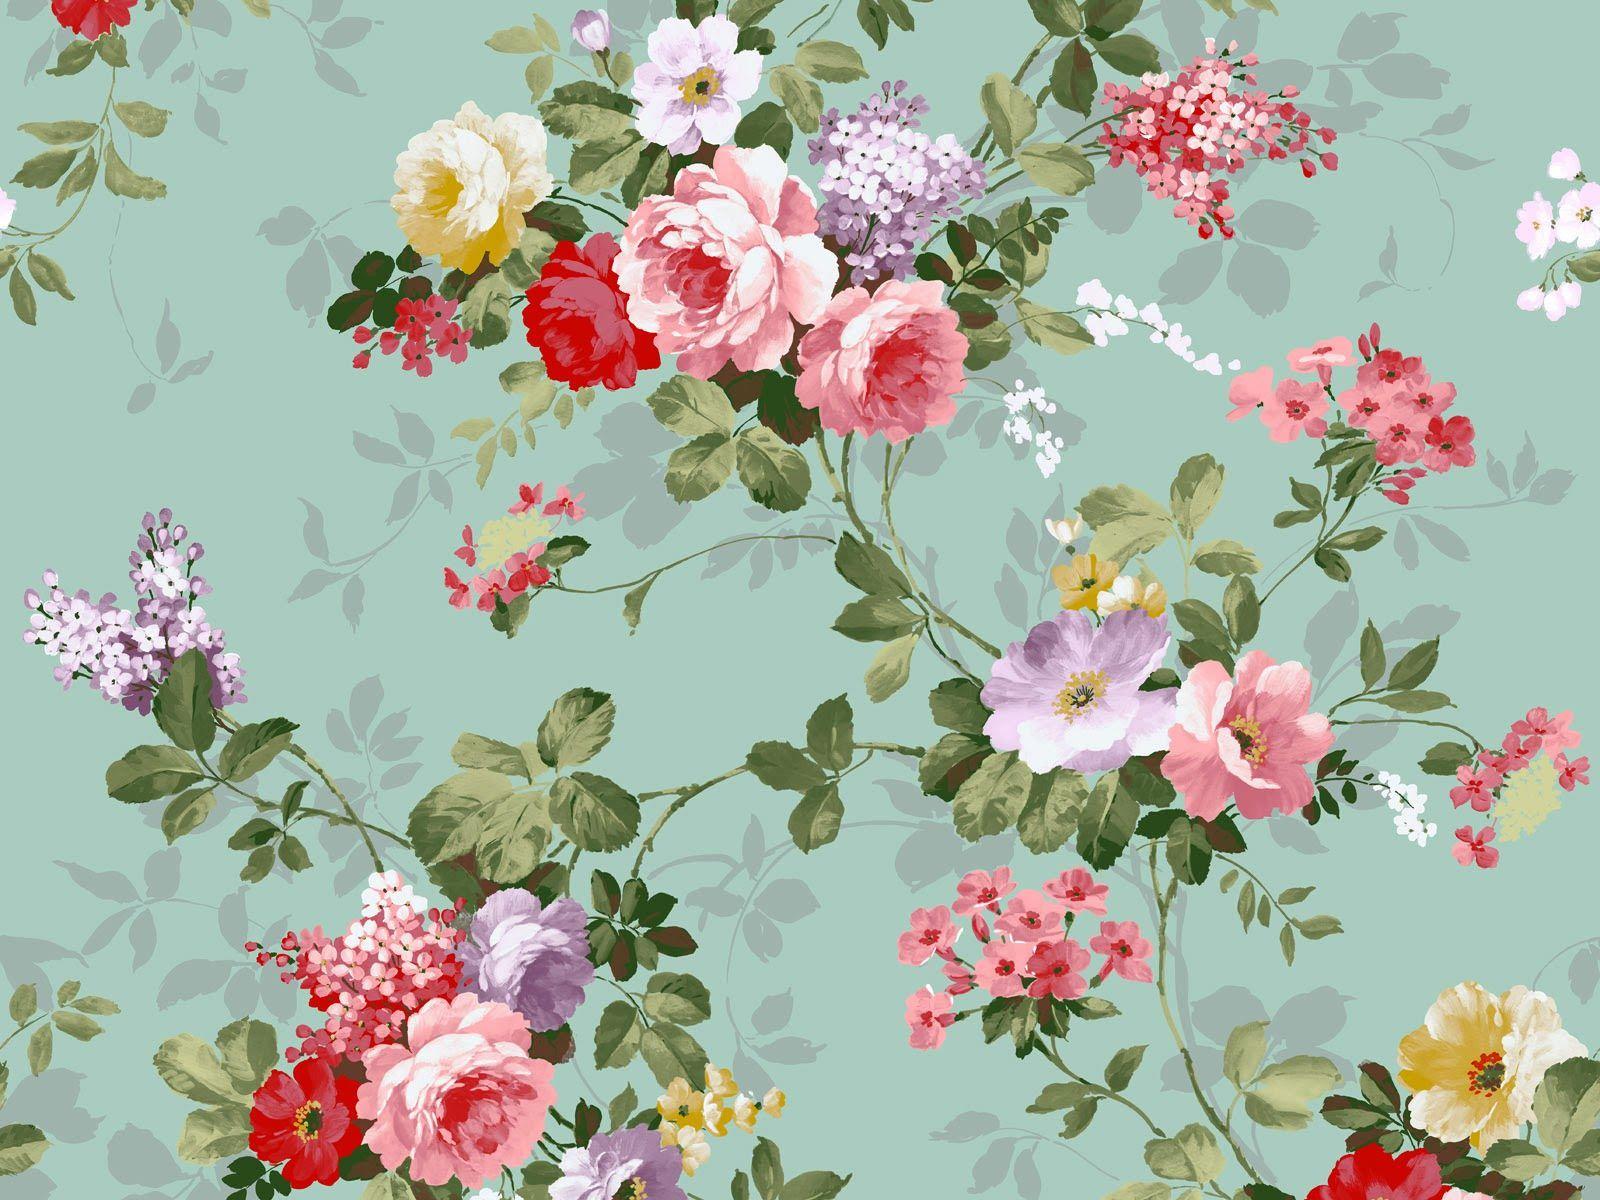 1K Floral Pattern Pictures  Download Free Images on Unsplash